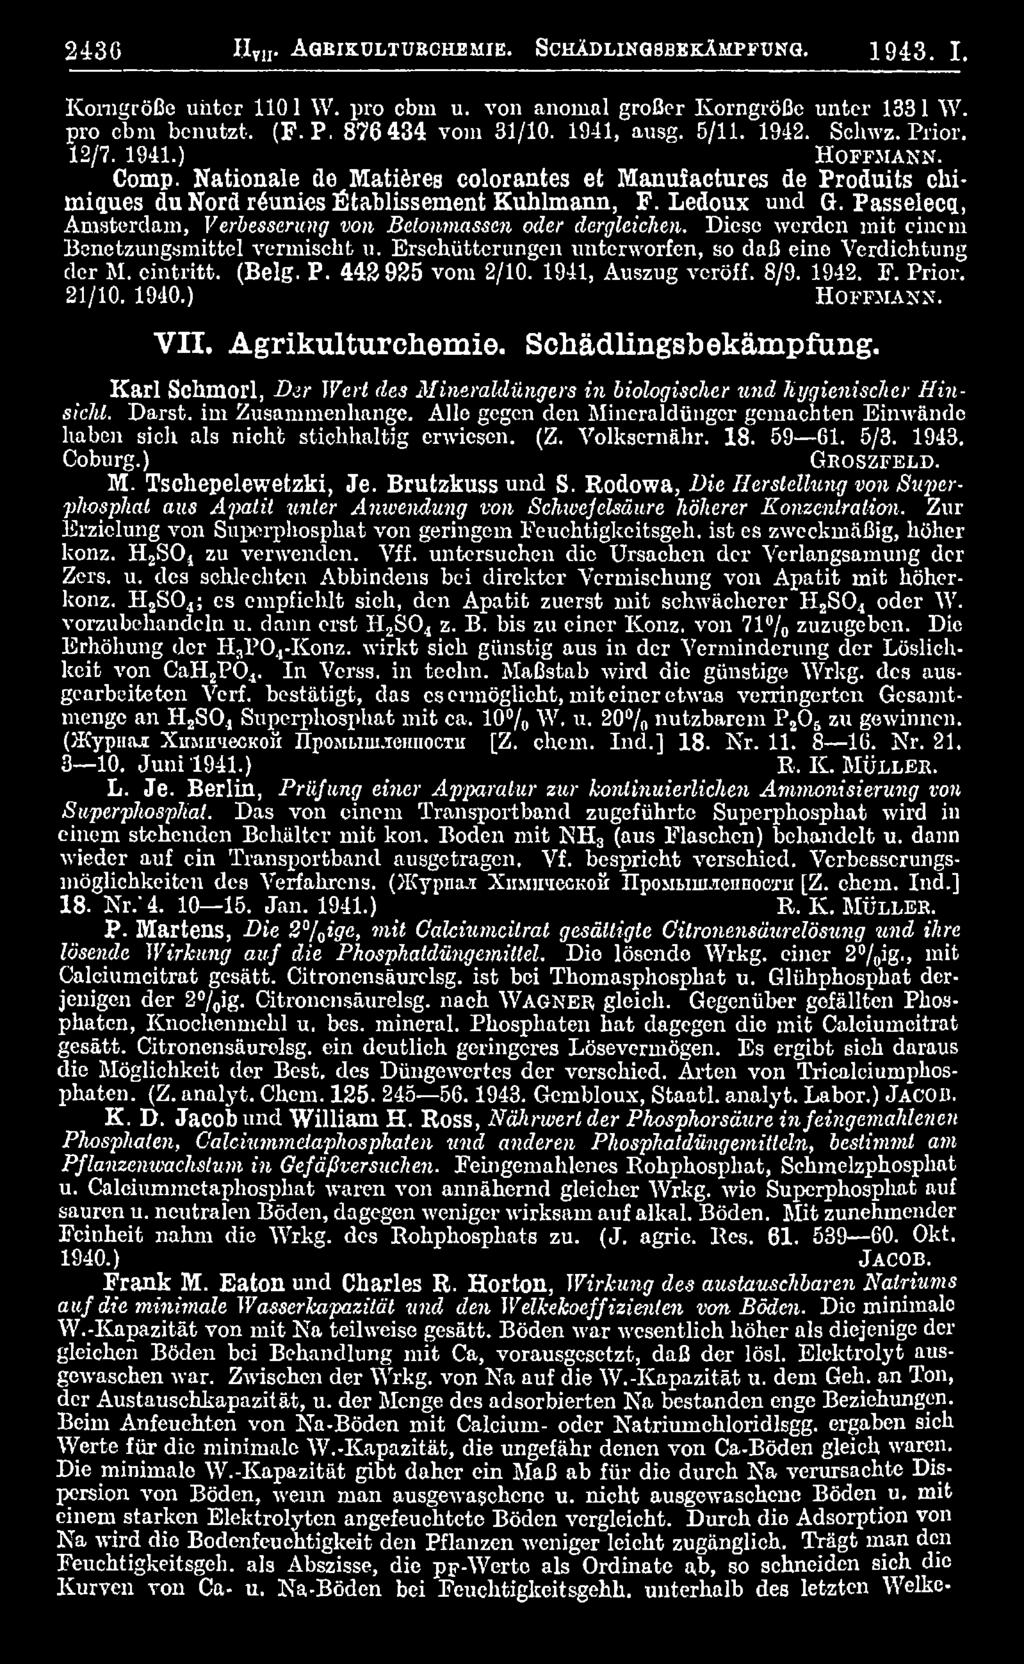 1940.) H o f f m a n n. VII. Agrikulturchemie. Schädlingsbekämpfung. Karl Schmorl, Dir Wert des Mineraldüngers in biologischer und hygienischer Hinsicht. Darst. im Zusammenhänge.